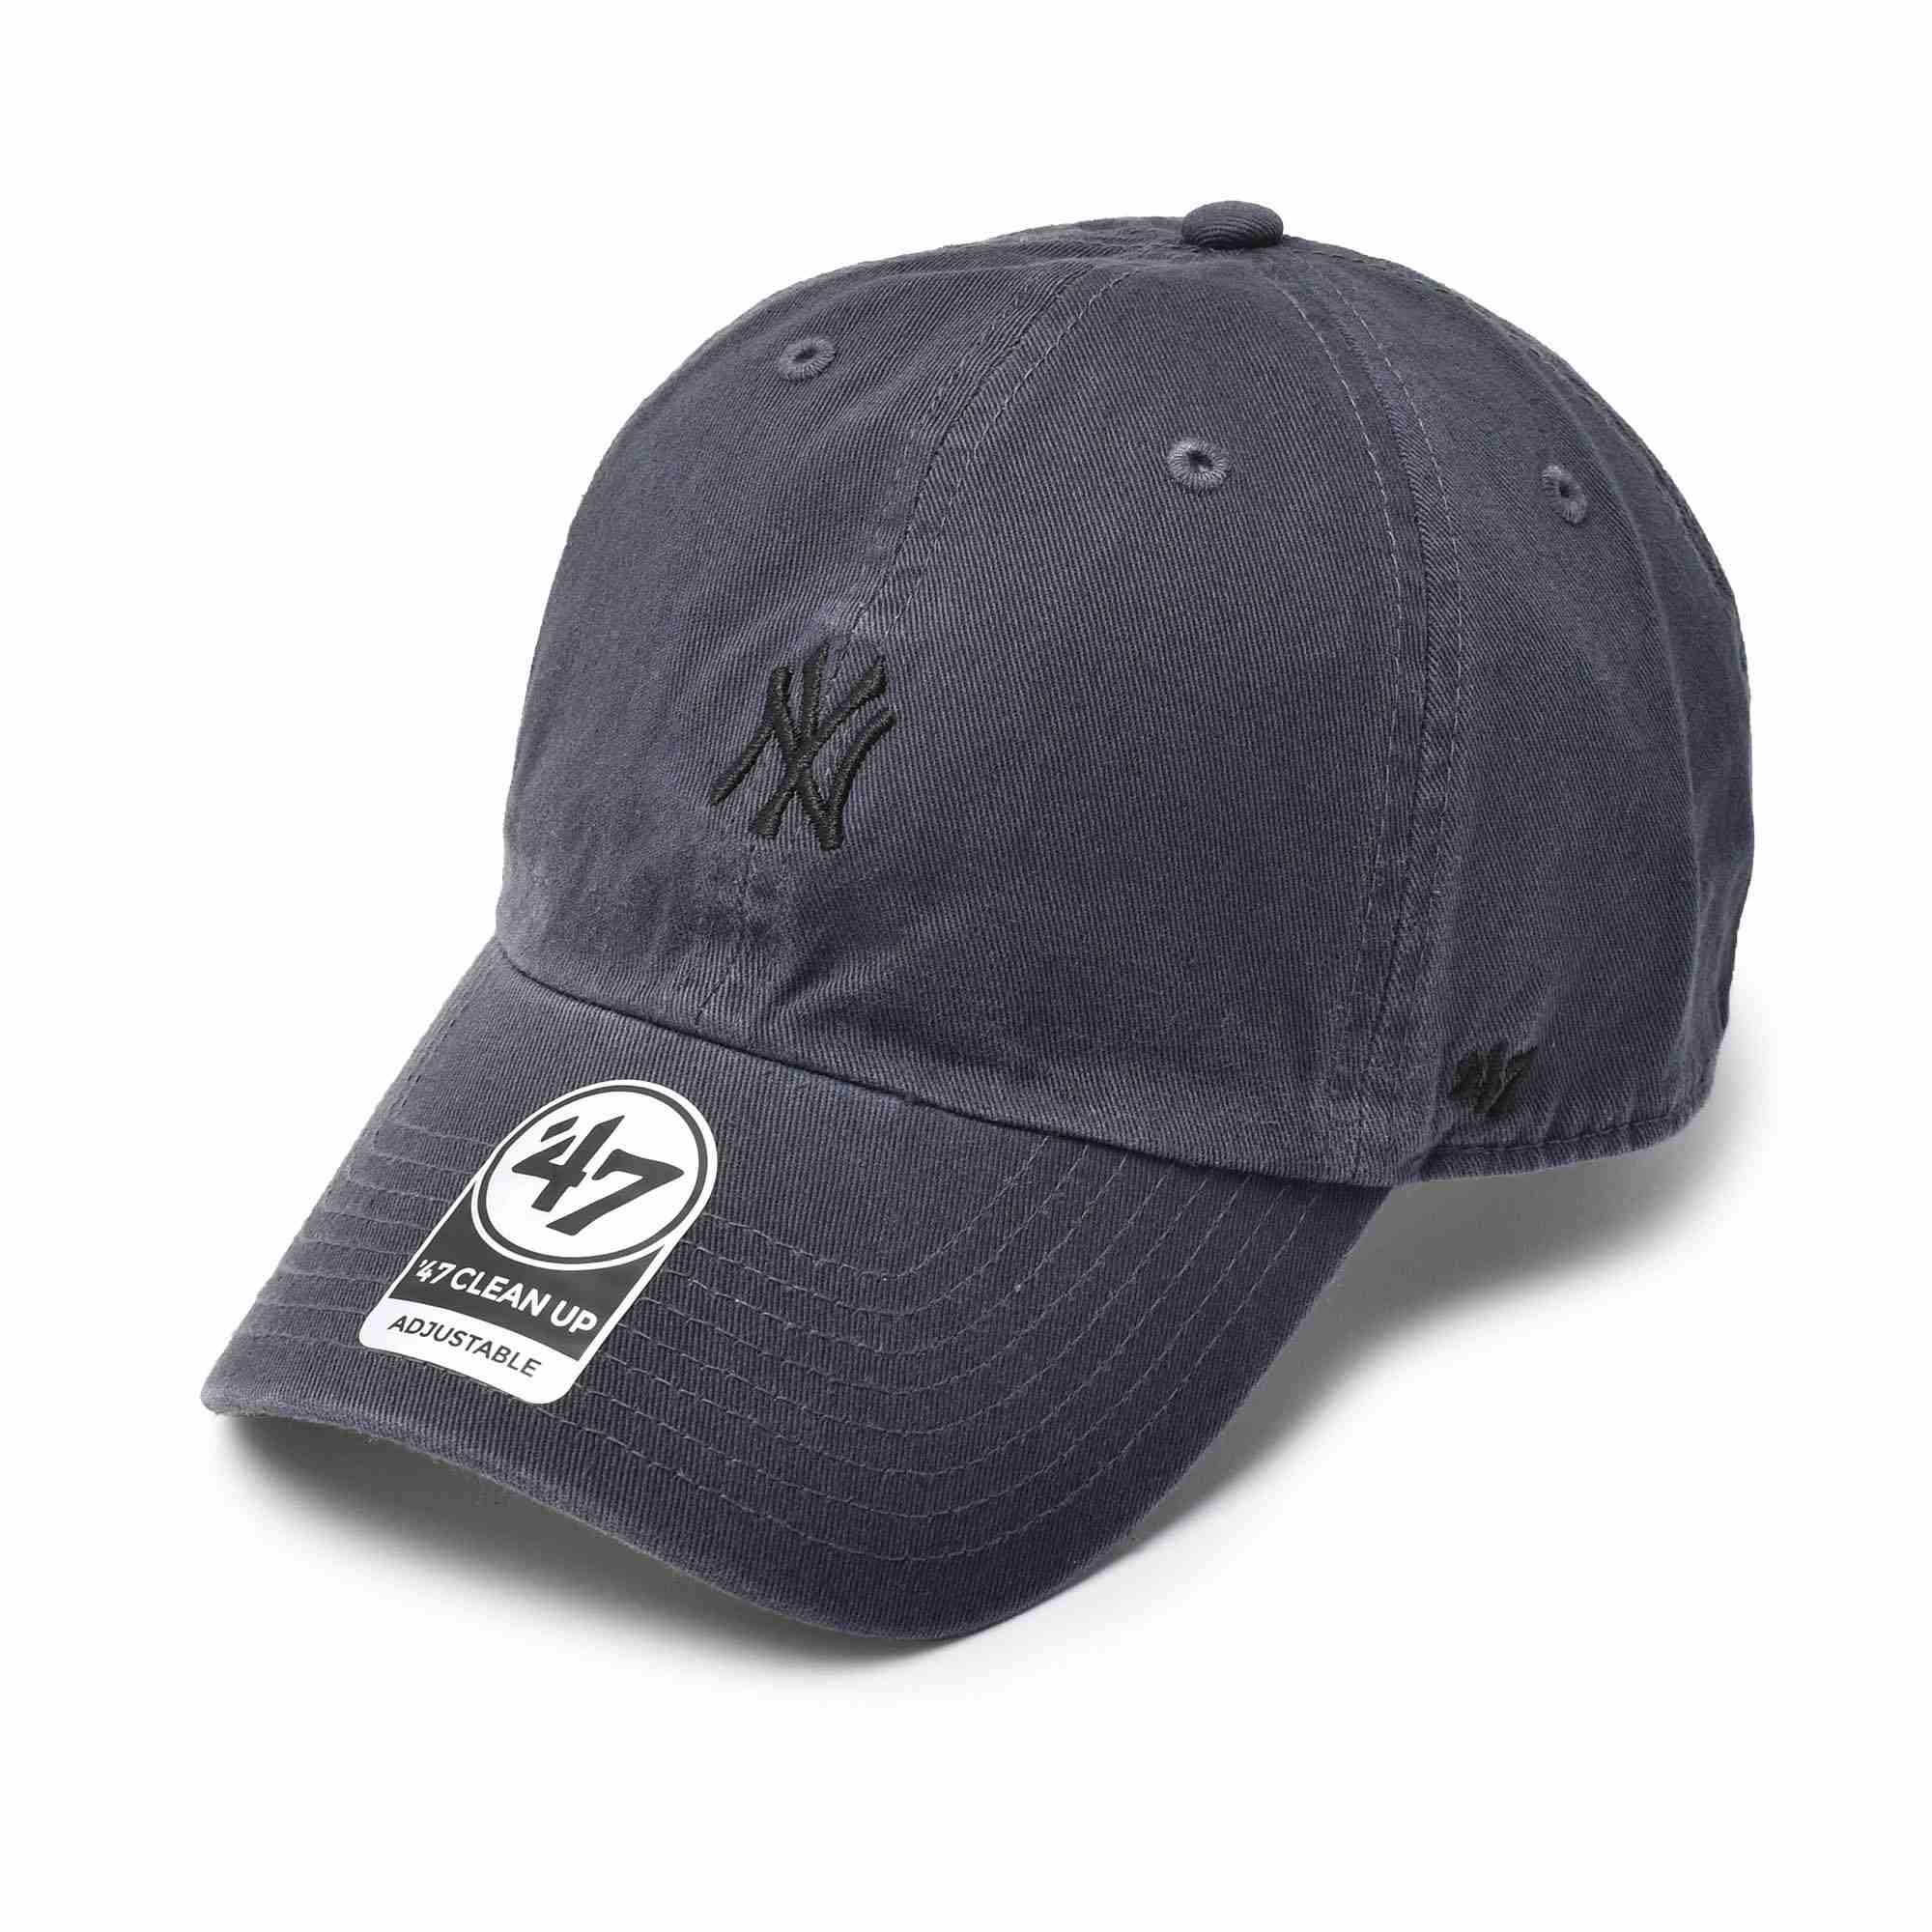 送料無料 47 ブランド キャップ 帽子 メンズ レディース ヤンキース キャップ ベースランナー ’47 クリーンナップ 47 BRAND